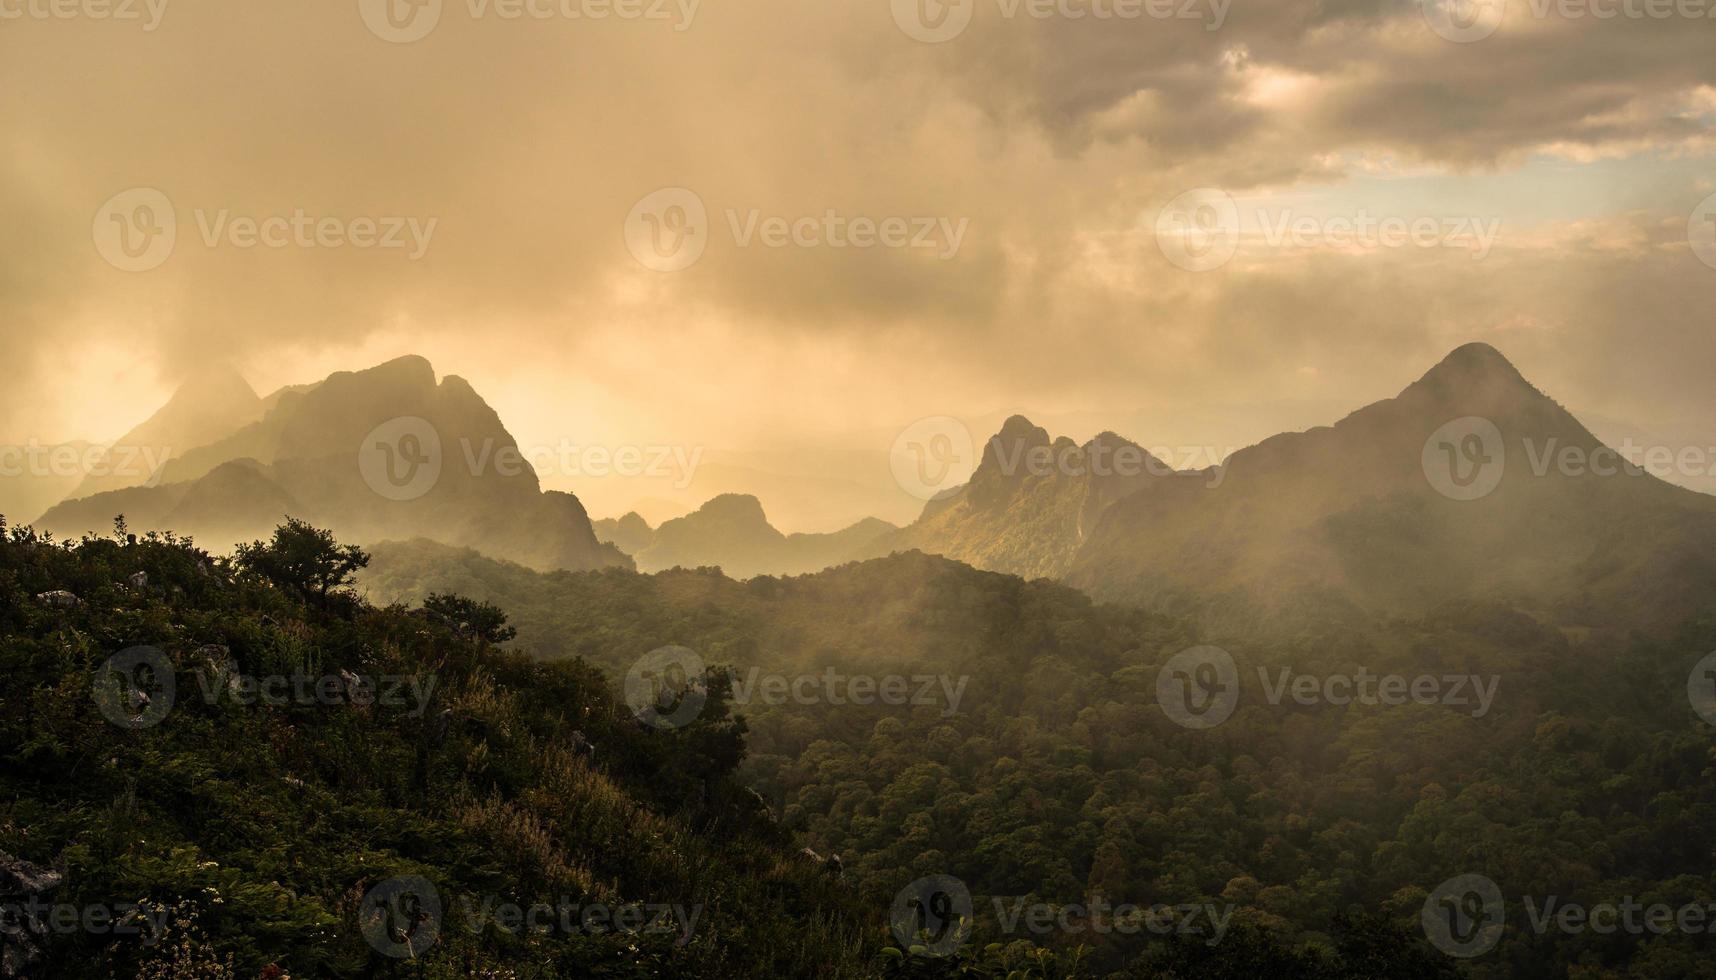 Panoramablick auf die chiang dao-bergkette in chiang mai, der nördlichen region thailands. doi luang chiang dao, bekannt als der letzte zahn des himalaya, erhebt sich majestätisch. foto